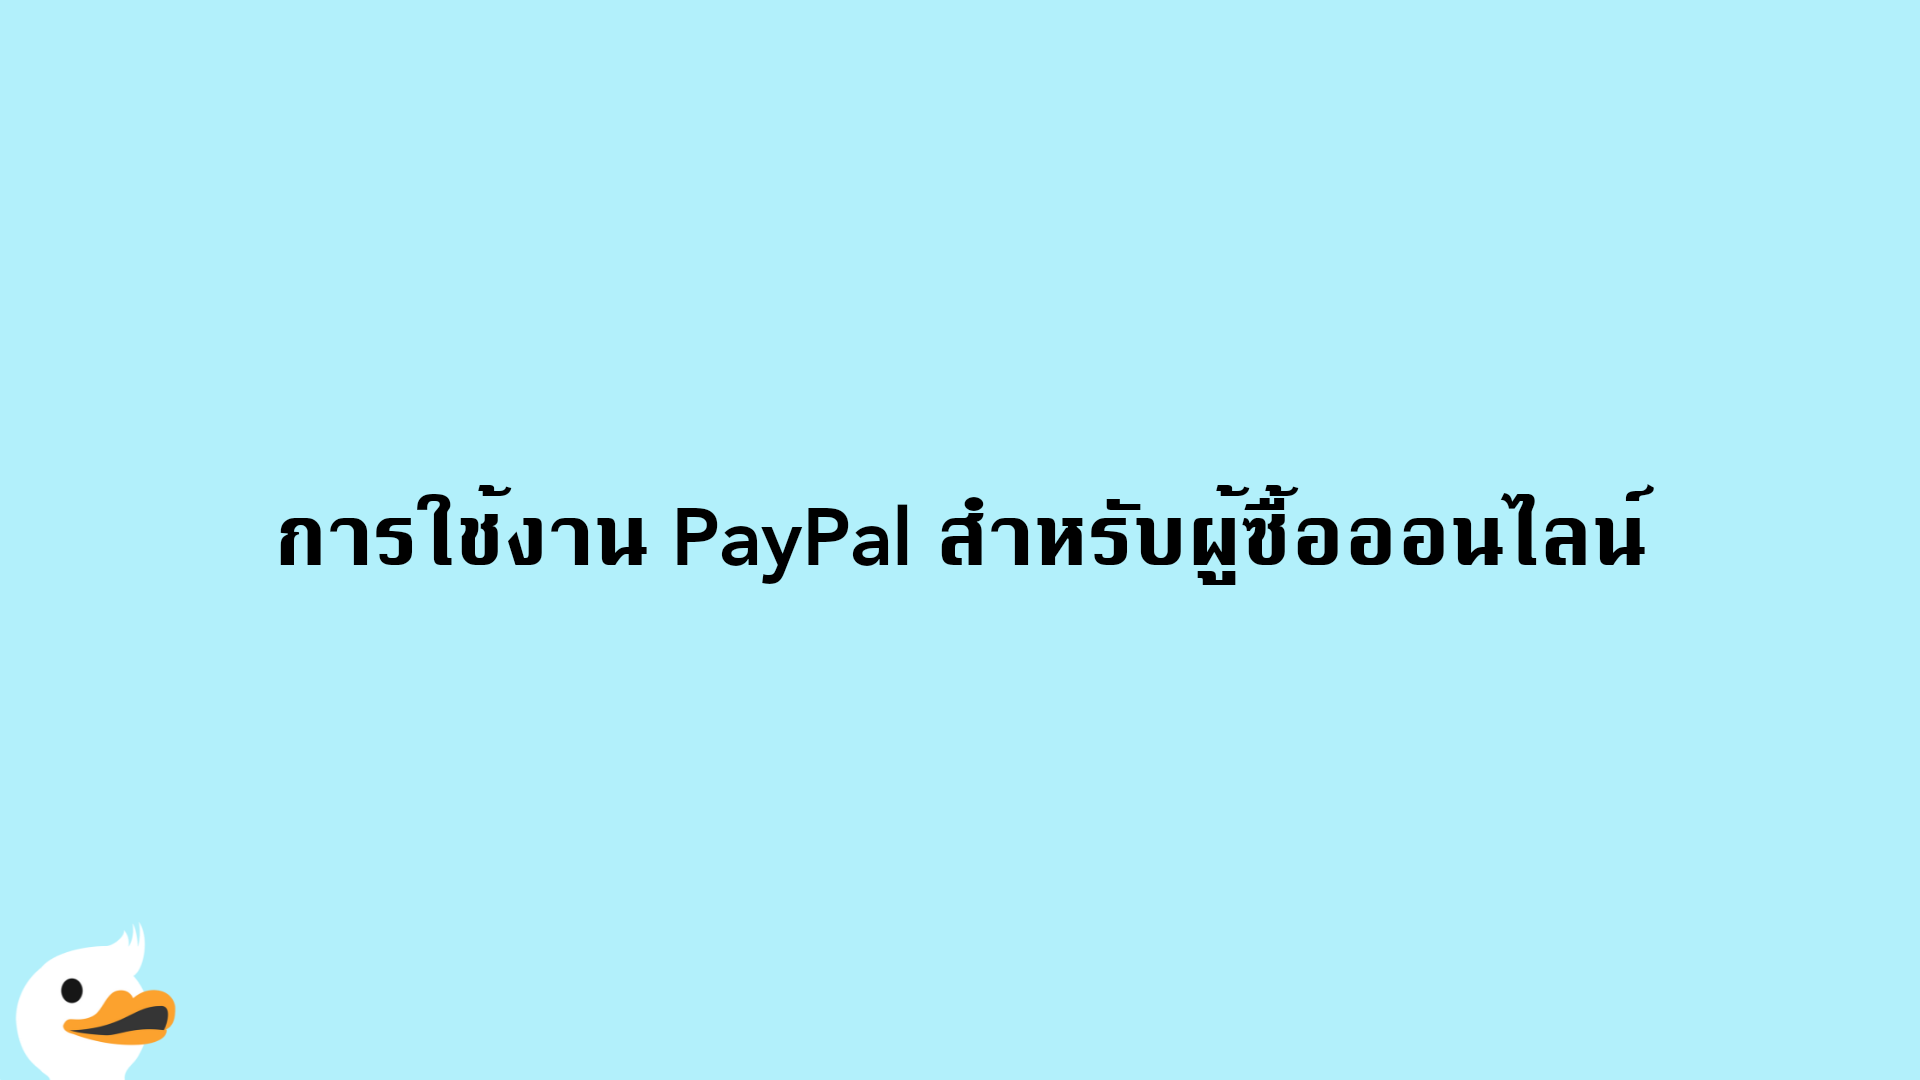 การใช้งาน PayPal สำหรับผู้ซื้อออนไลน์